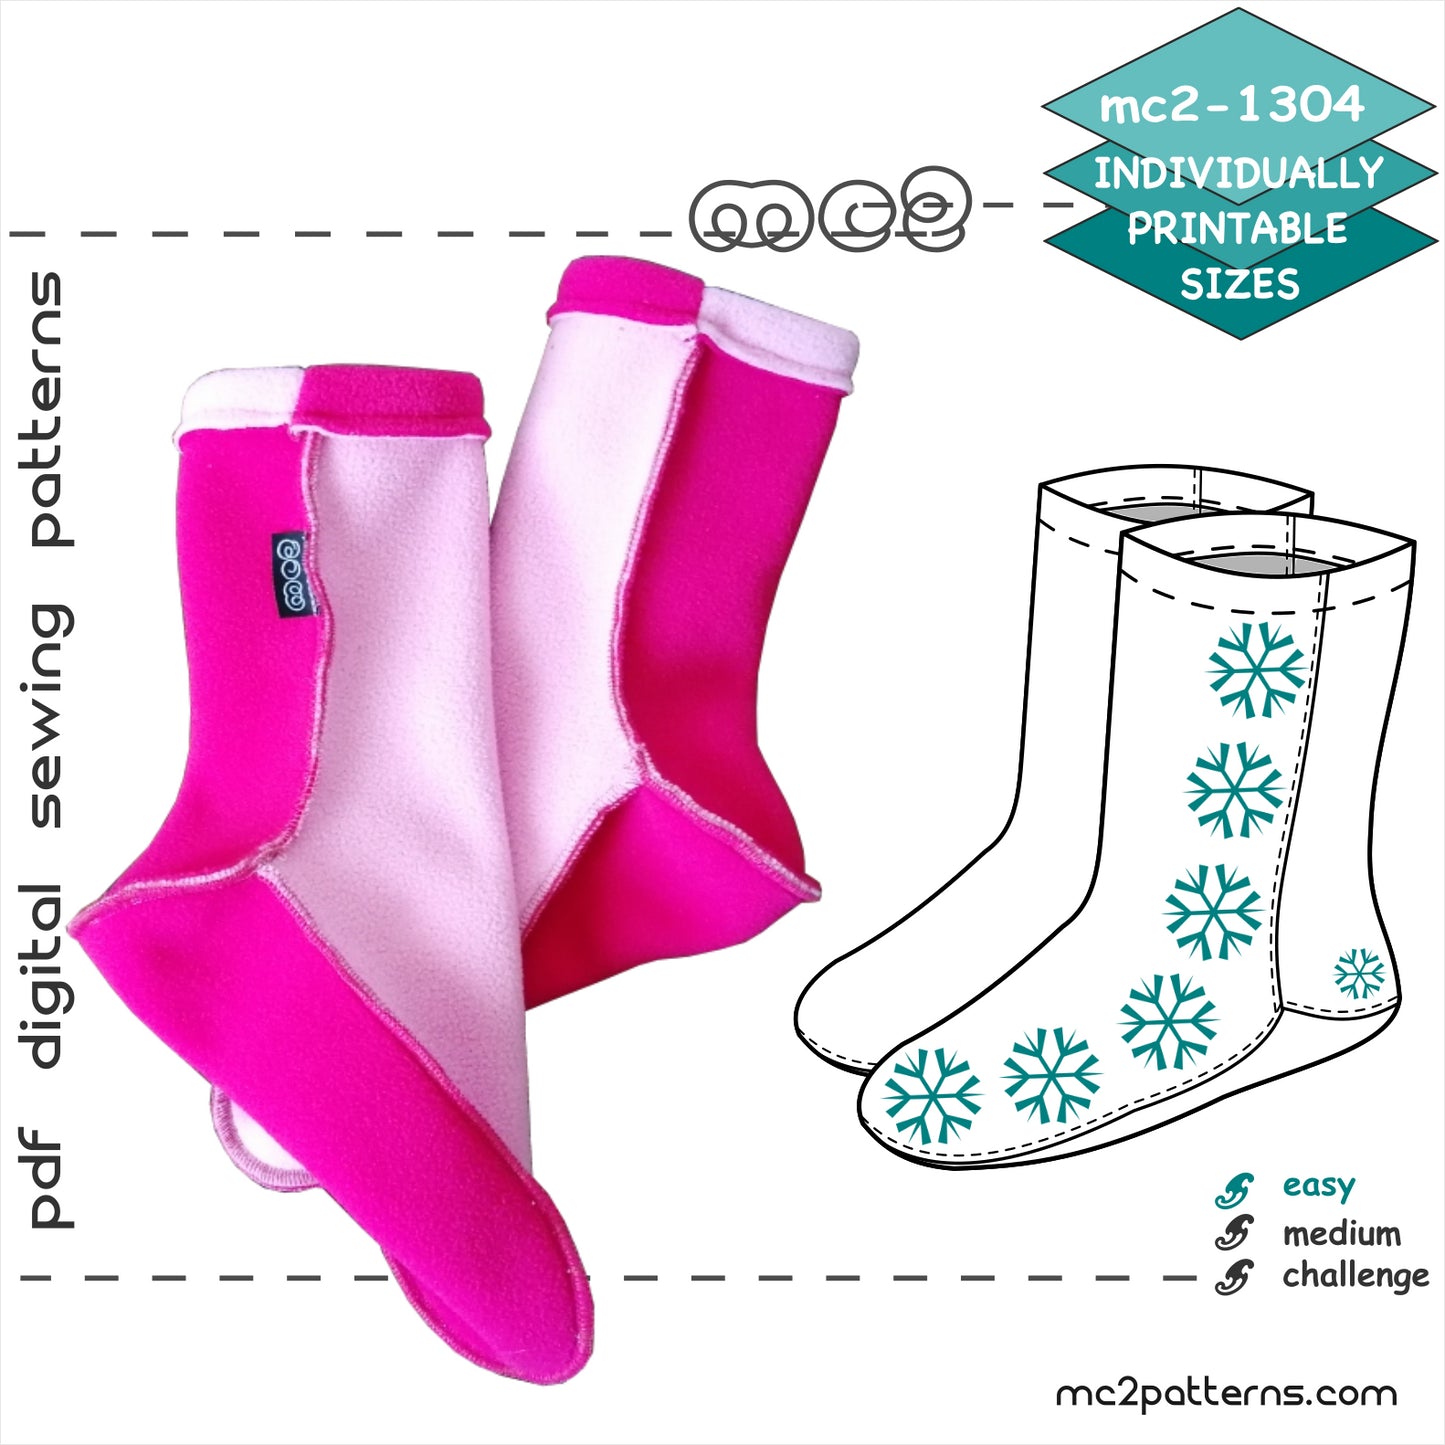 Easy-to-Make Fleece Socks